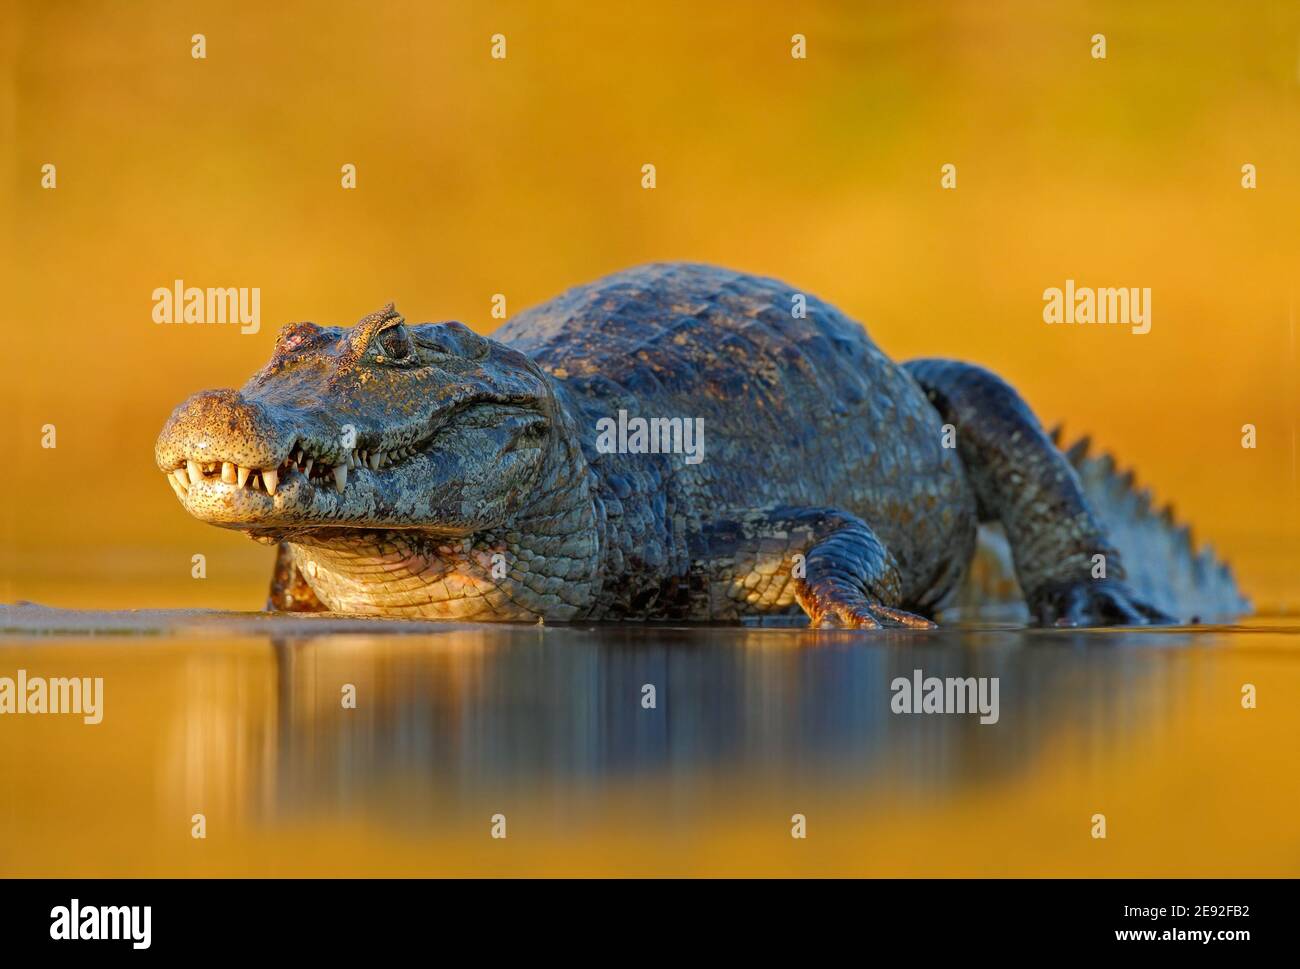 Yacaare Caiman, Pantanal, Brésil. Portrait détaillé du reptile danger. Crocodile dans l'eau de la rivière, lumière du soir. Banque D'Images